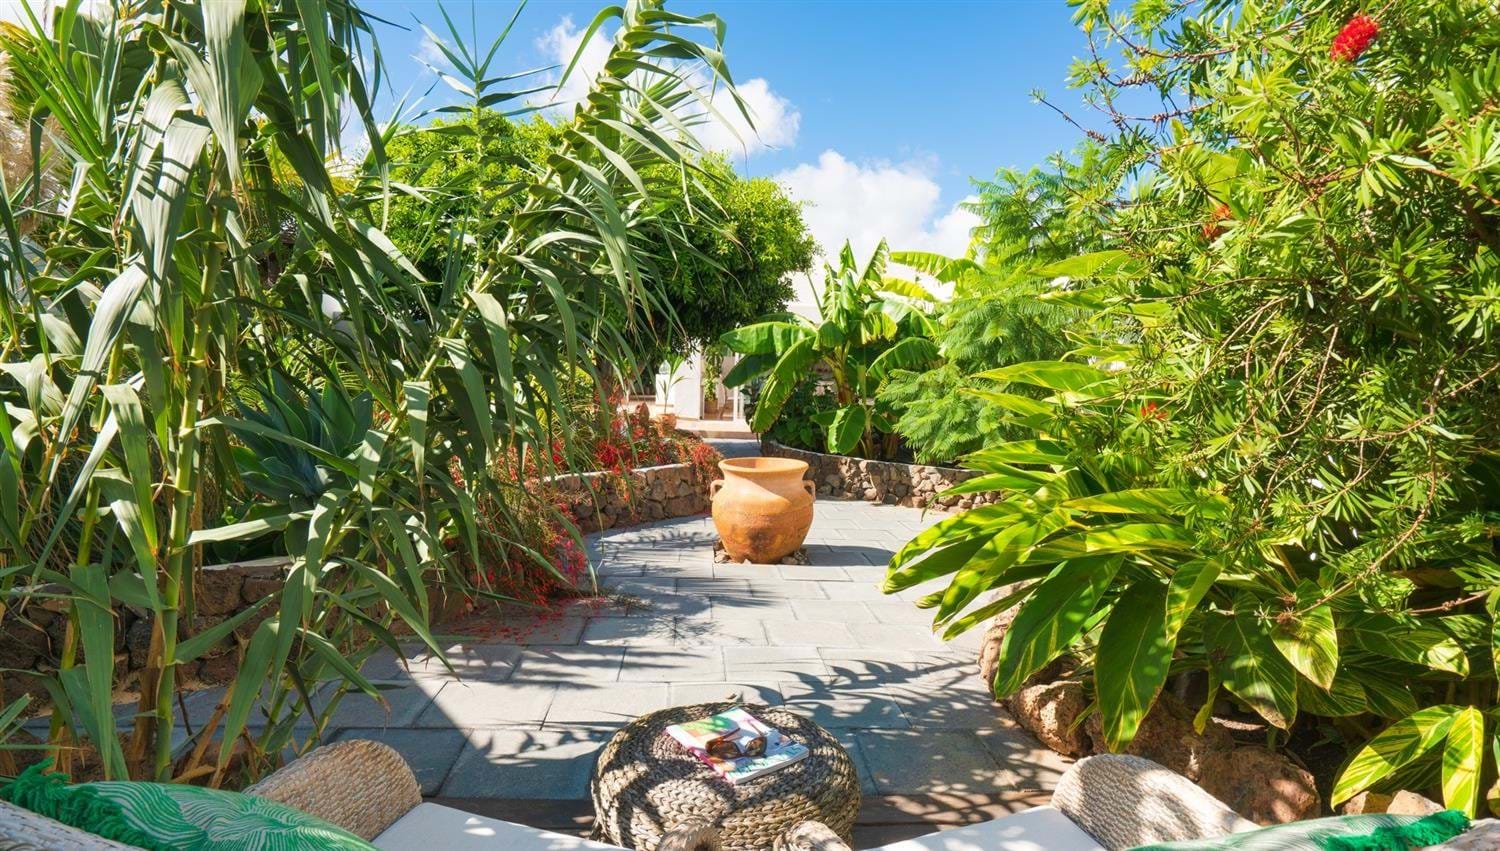 Views of palms and bananas in The Secret Garden Villa at Finca Botanico, Lanzarote